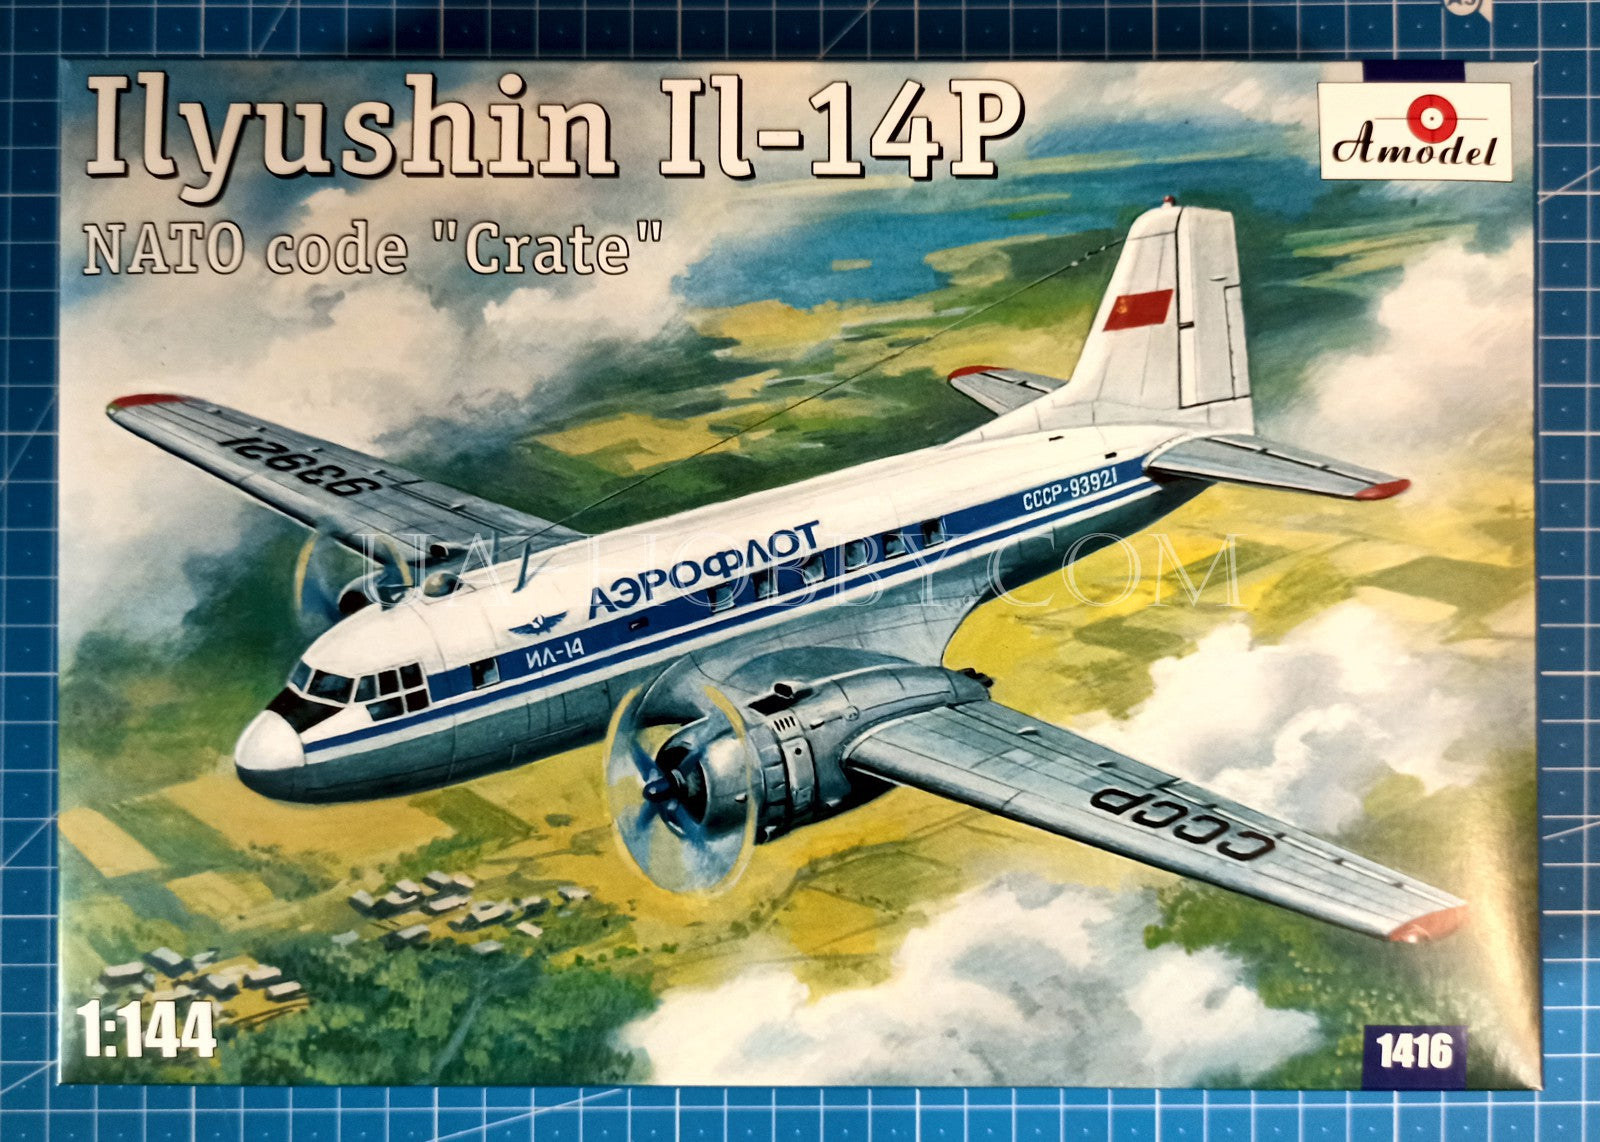 1/144 Ilyushin Il-14P. Amodel 1416